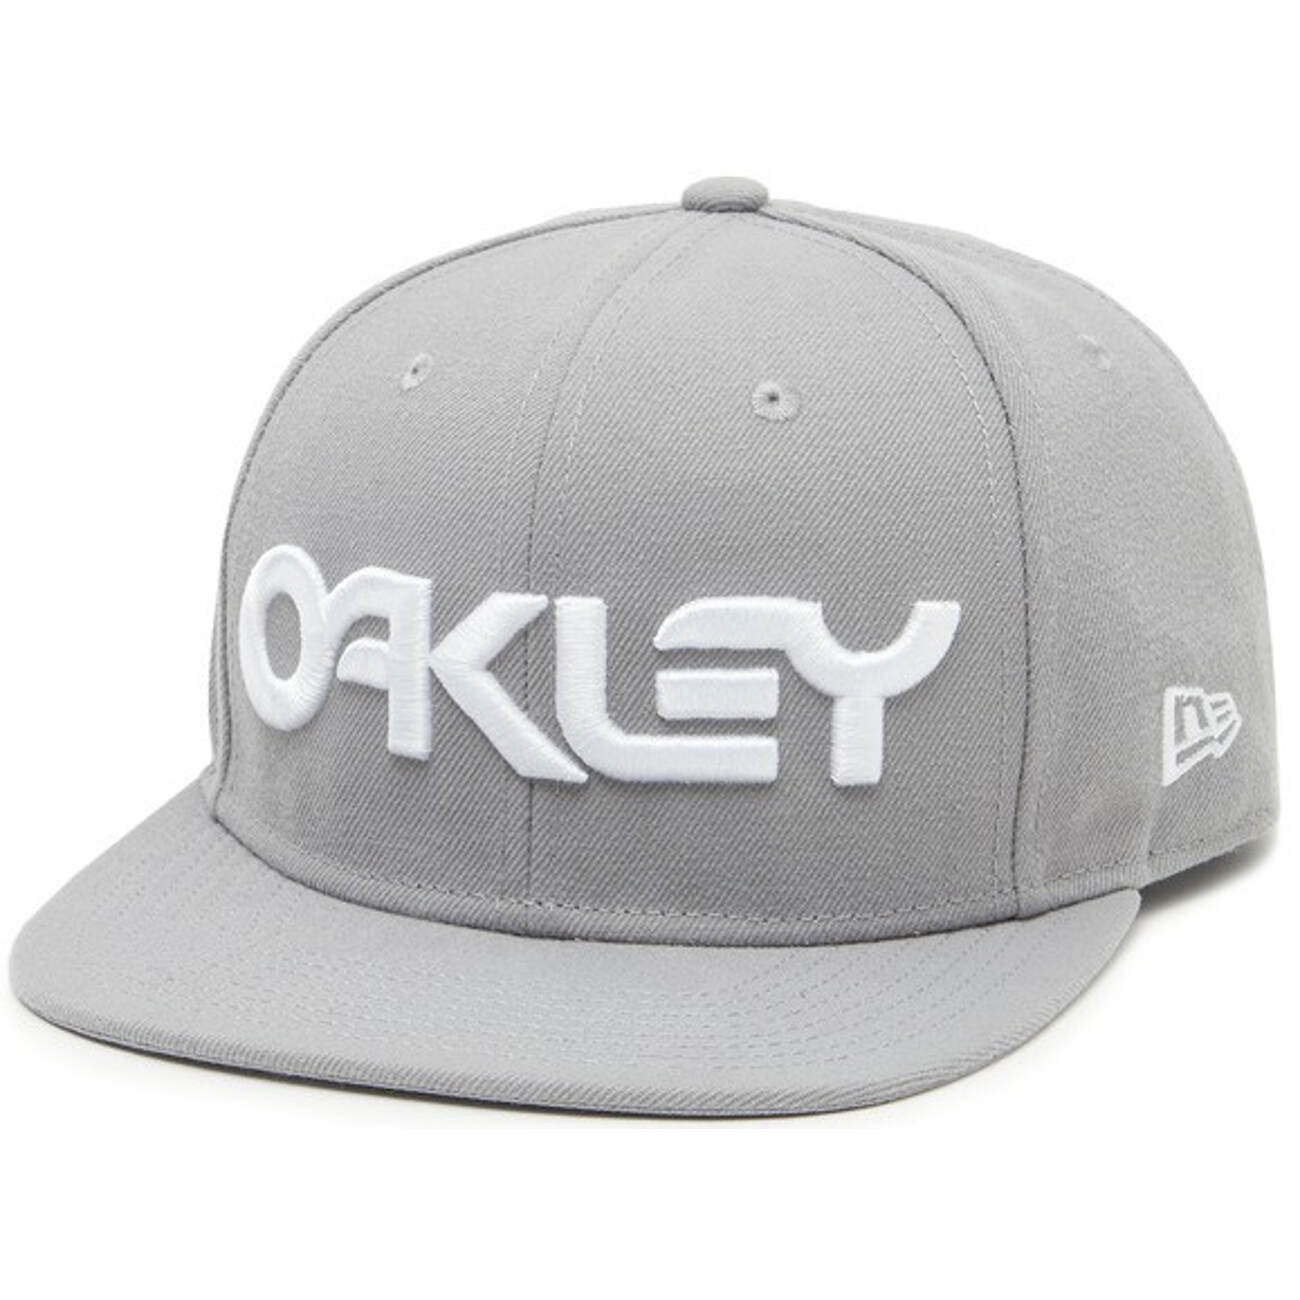 Oakley Snapback Cap Mark II Novelty Stone Grey